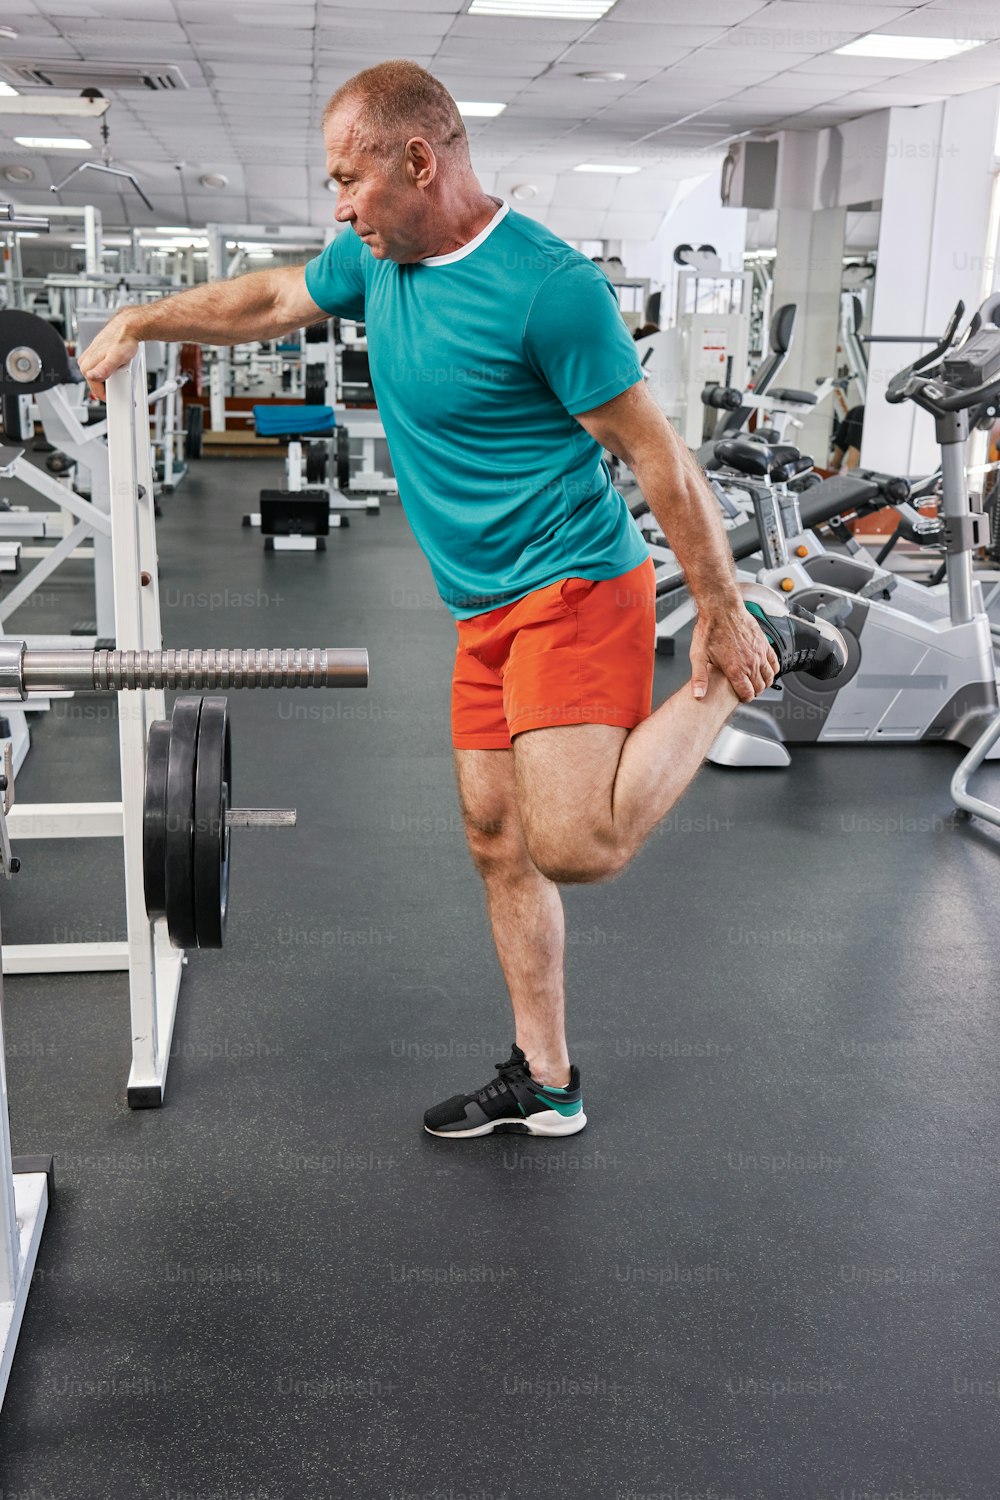 Un hombre en un gimnasio haciendo ejercicios con una barra